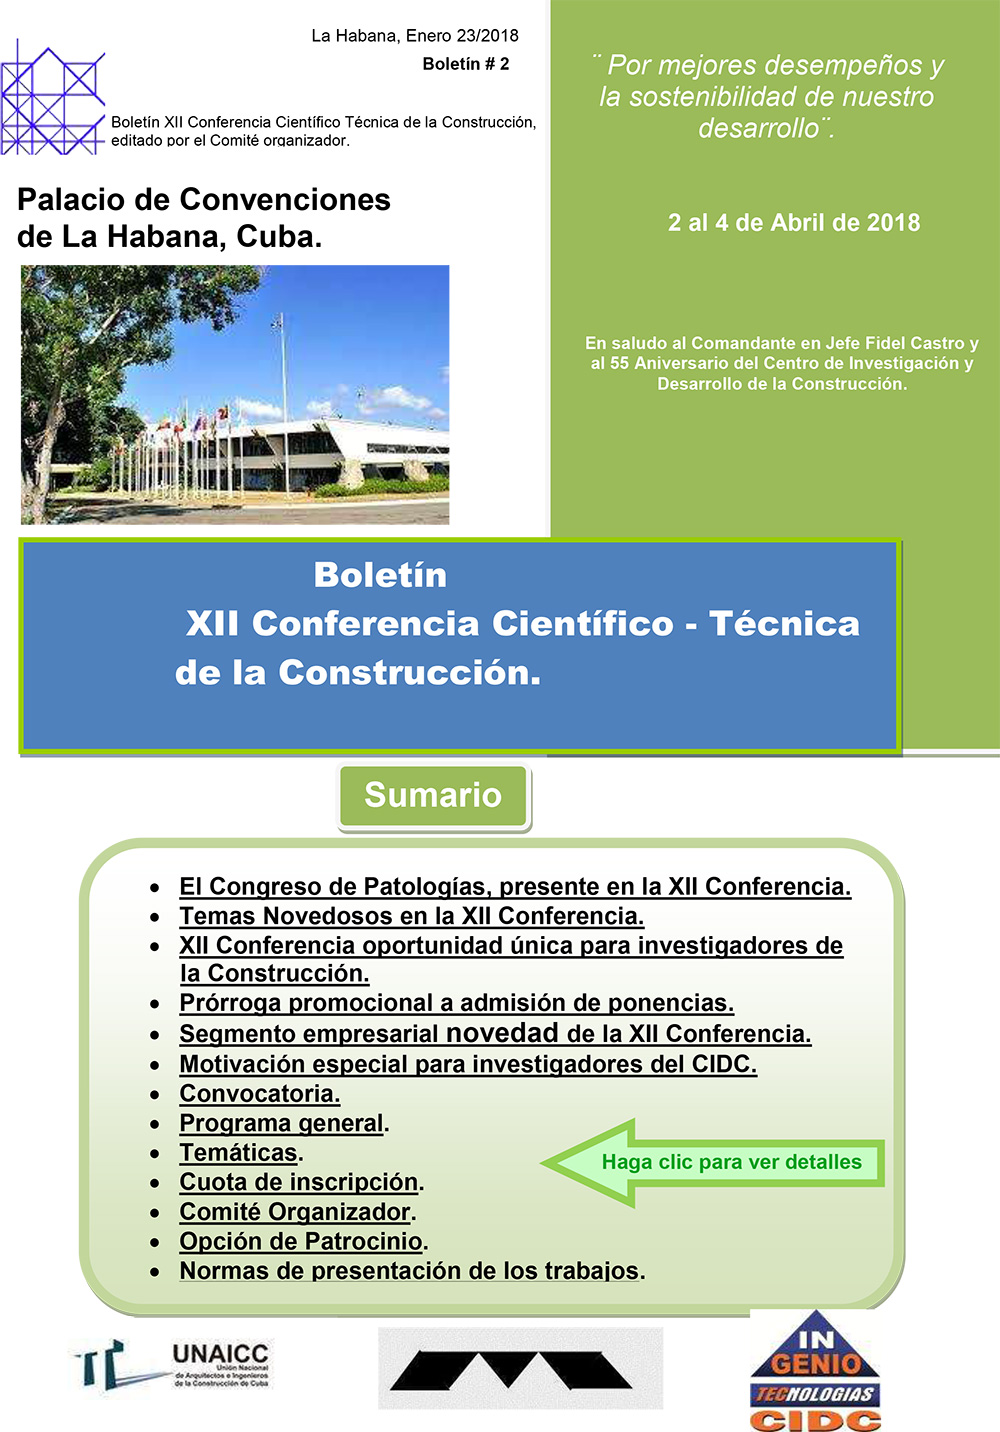 pdf-Boletin-2-XII-Conferencia-CTC.jpg